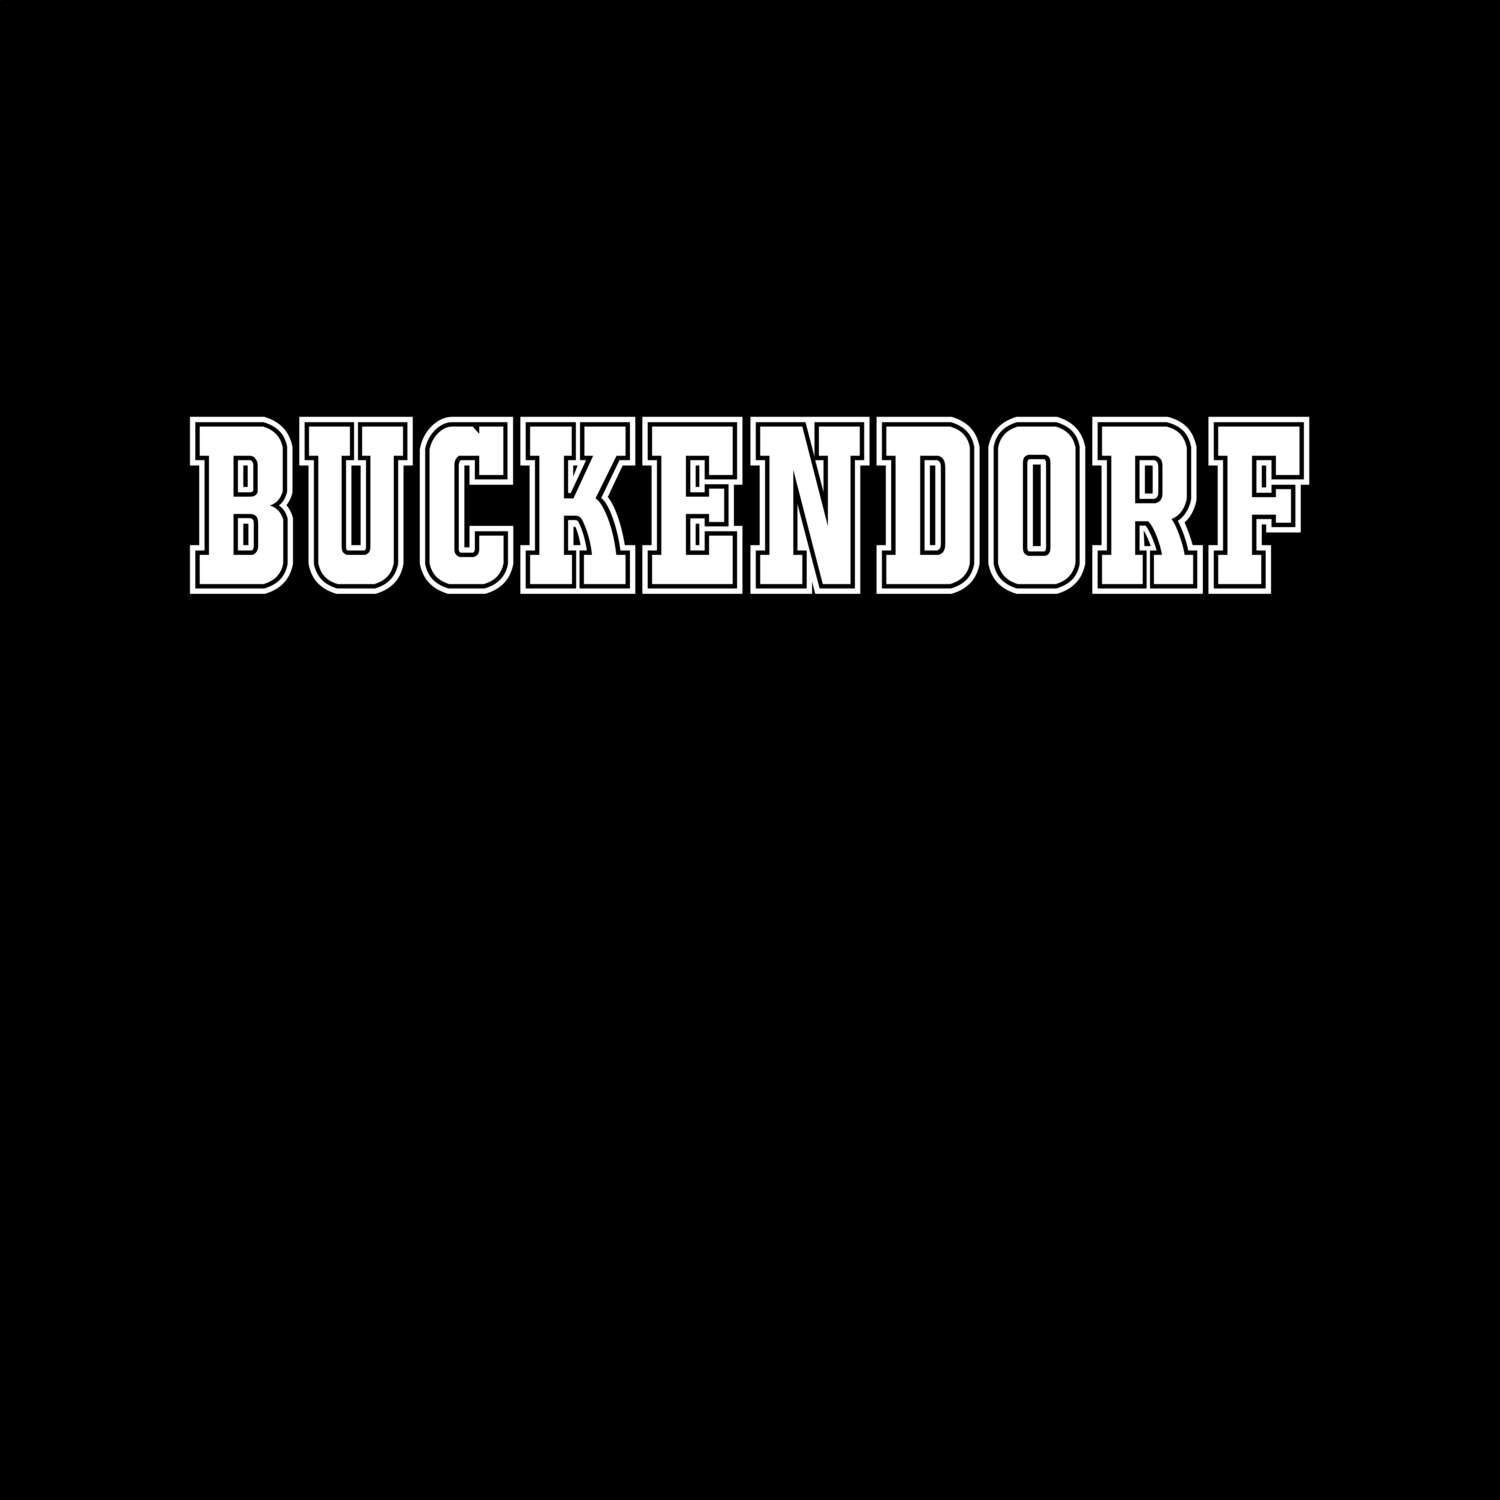 Buckendorf T-Shirt »Classic«